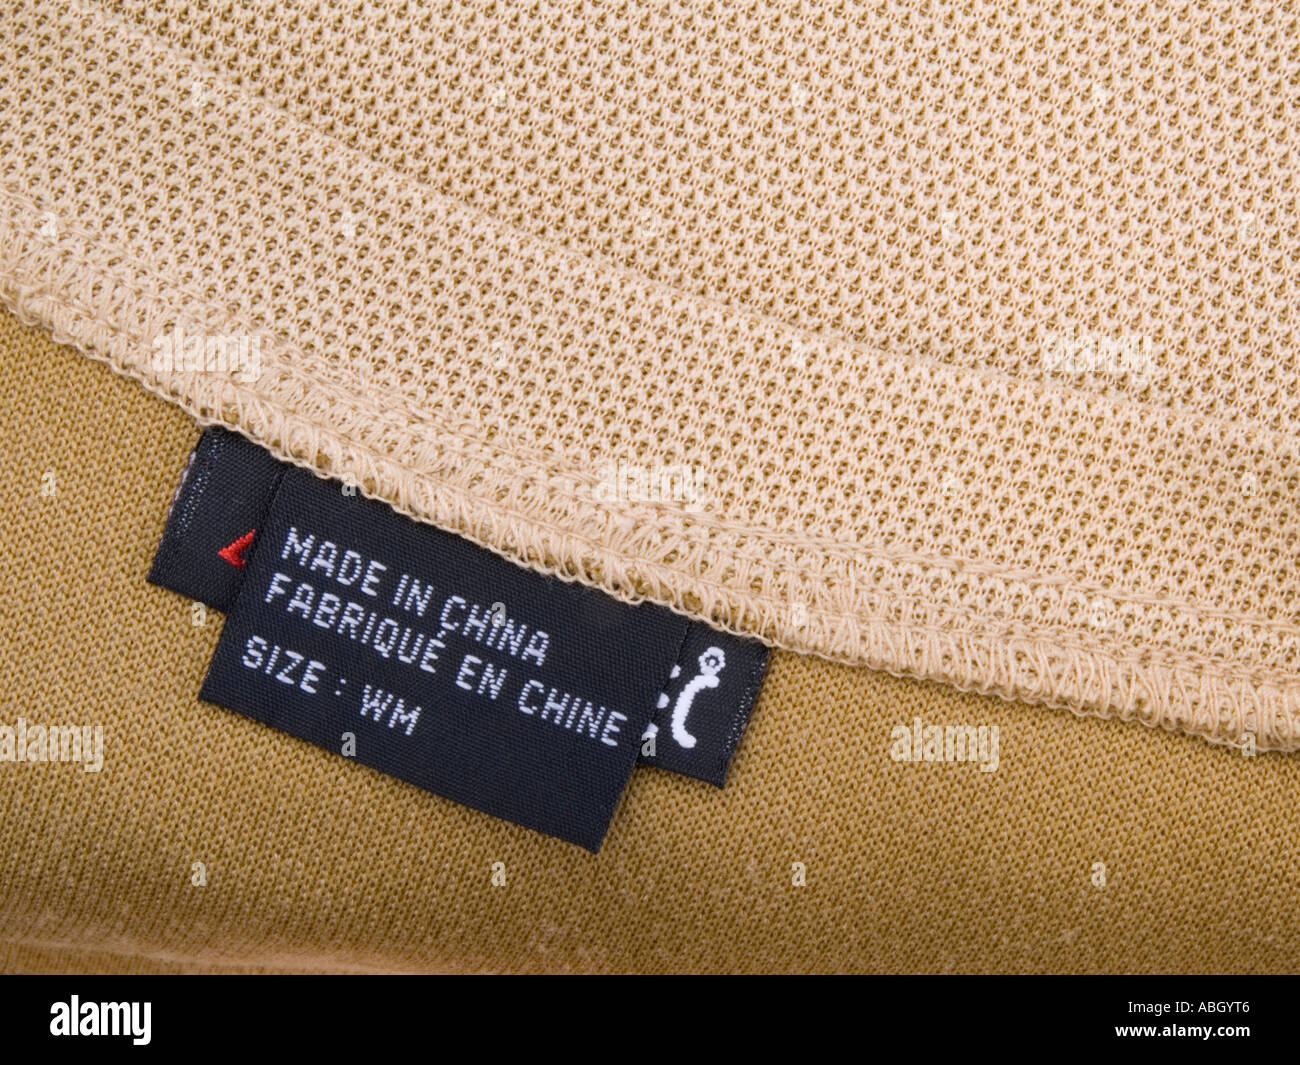 Abbigliamento nero etichetta nel chiudere con le parole in inglese e francese sul marrone pallido sommità colorata 'made in China'. Inghilterra, Regno Unito Foto Stock